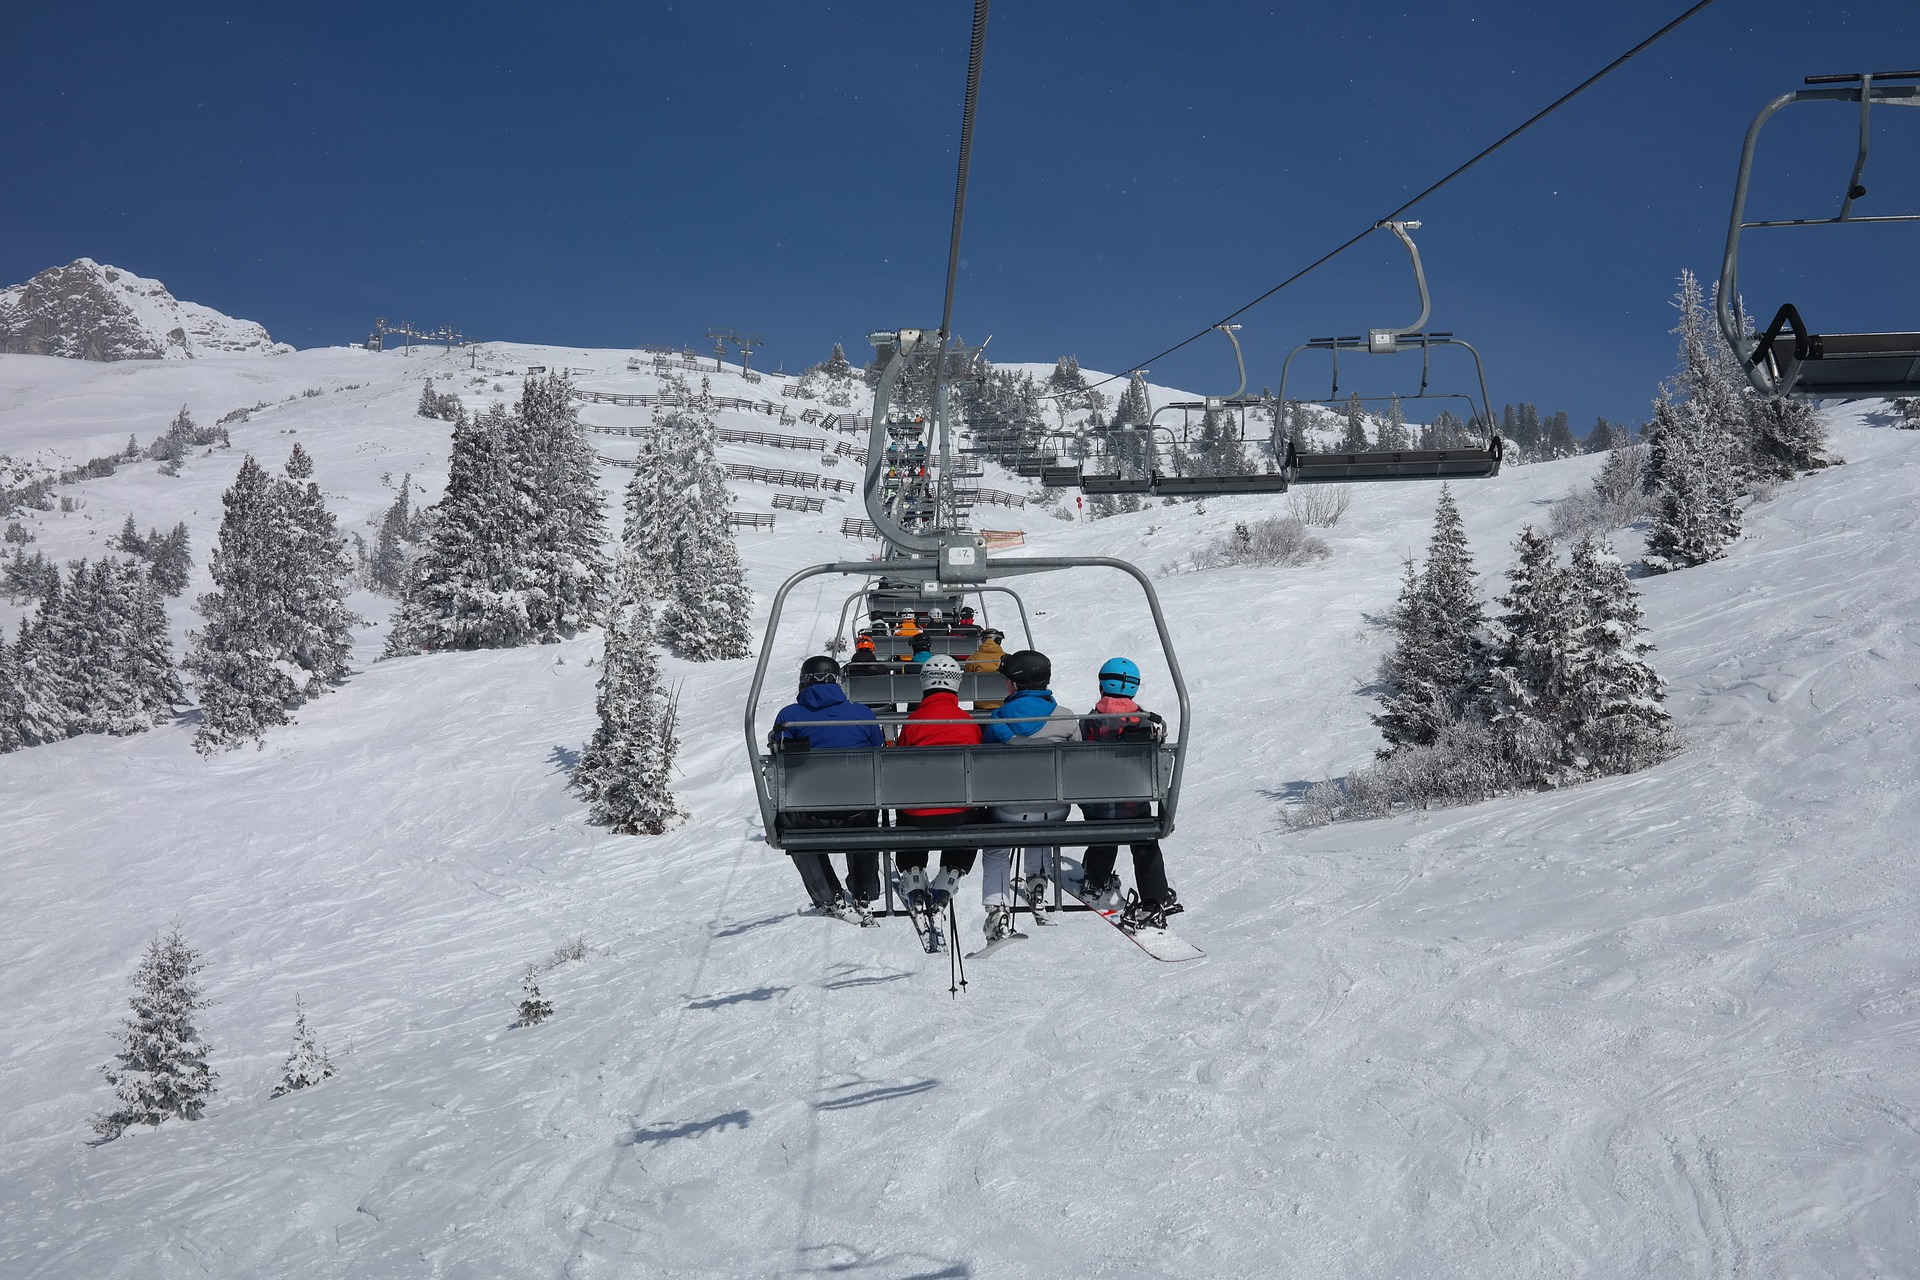 ski-lift-999226_1920.jpg